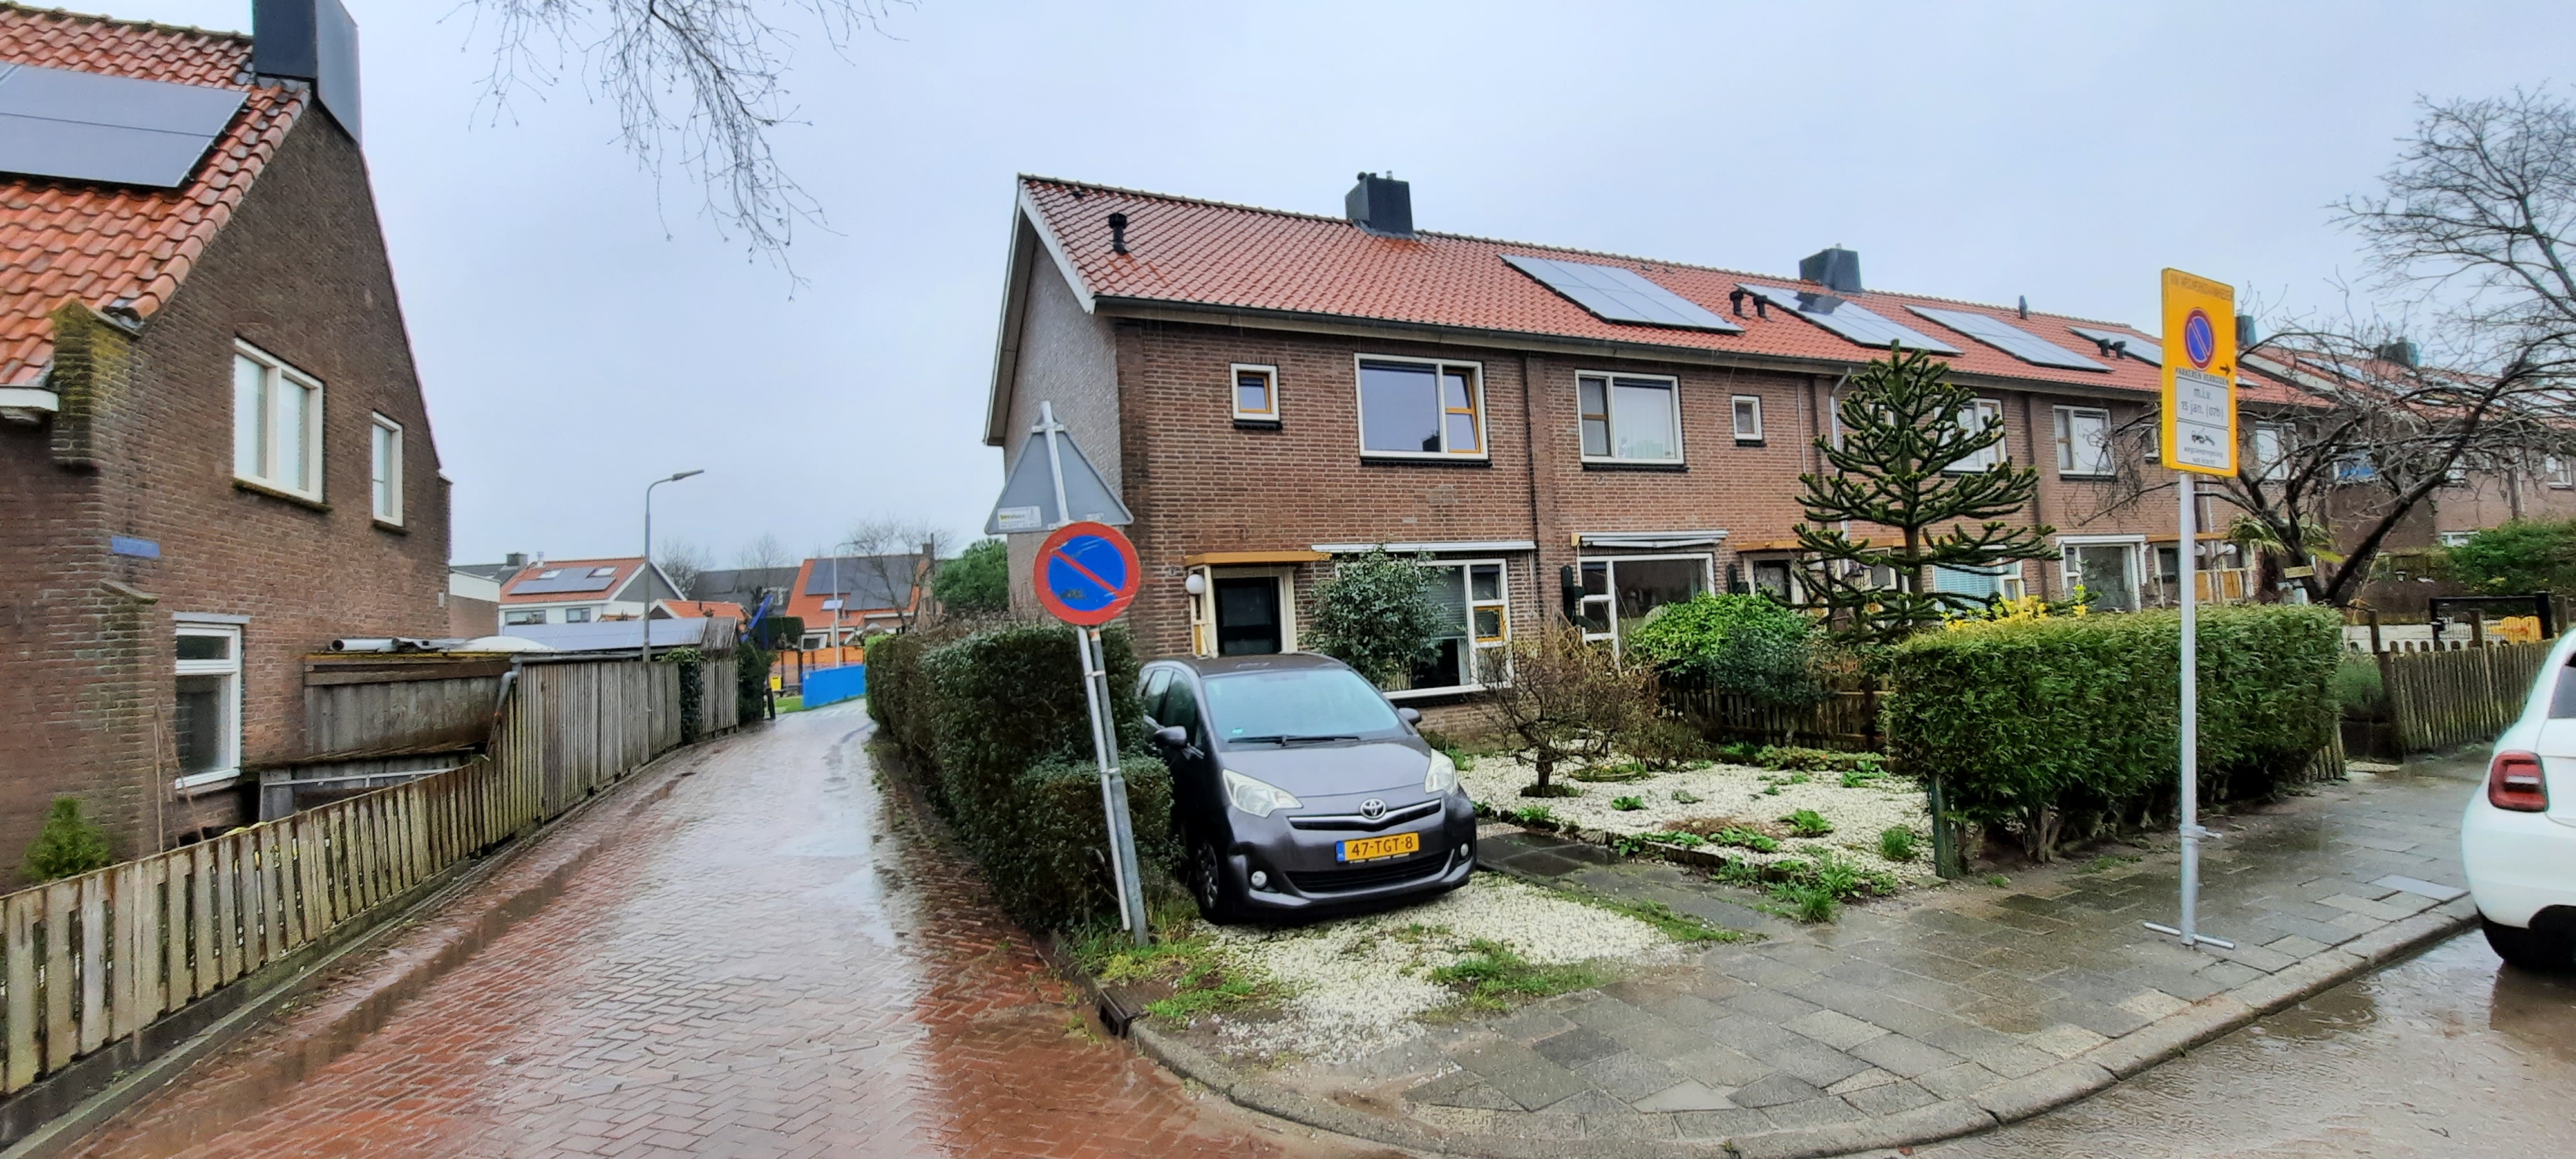 Groenestein 25, 2394 AT Hazerswoude-Rijndijk, Nederland